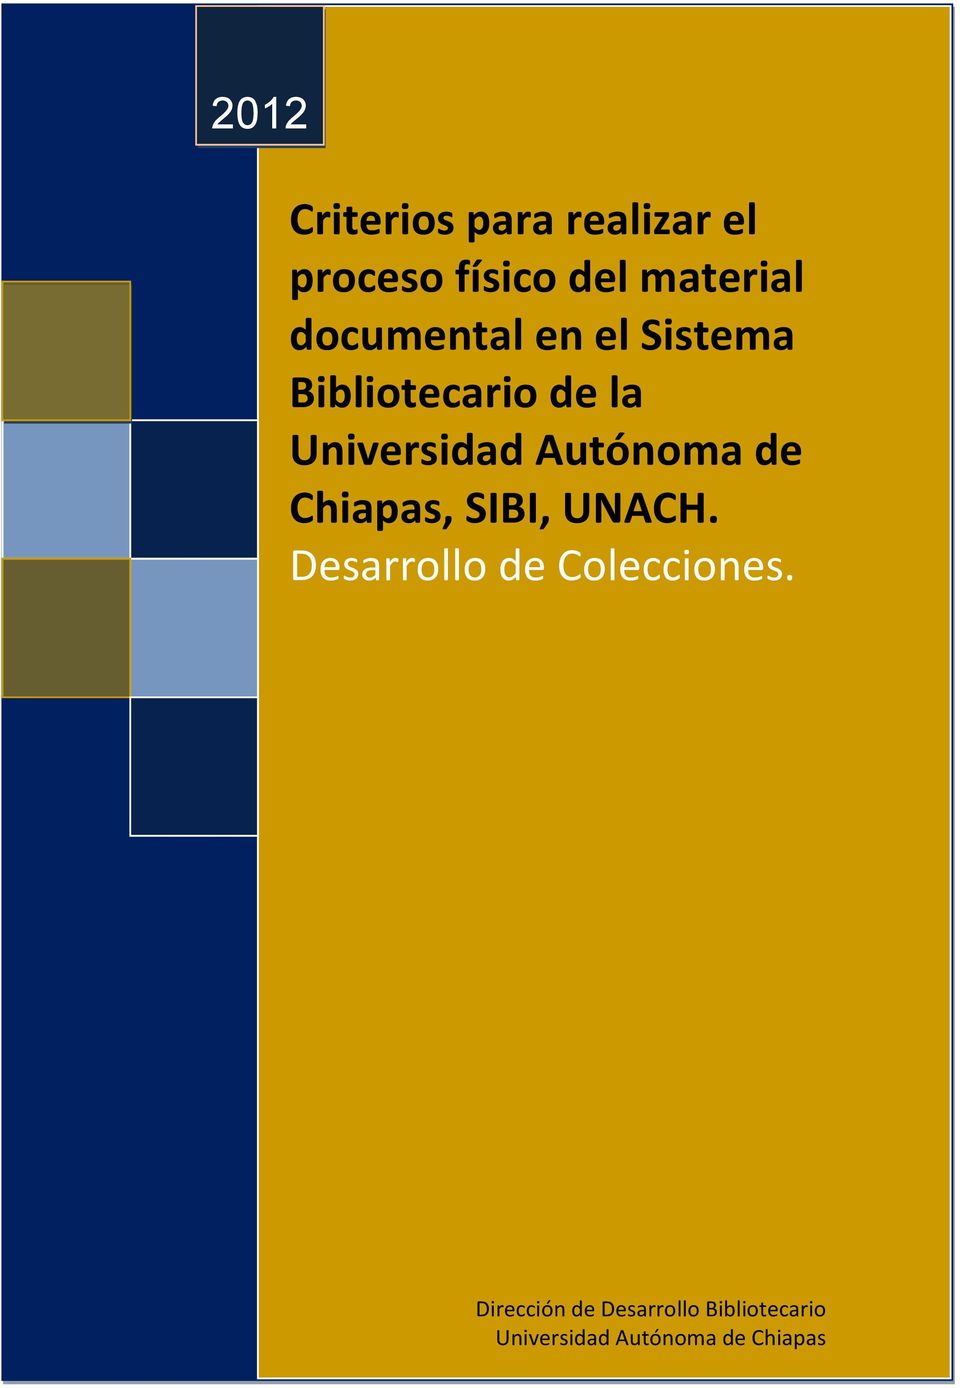 Autónoma de Chiapas, SIBI, UNACH. Desarrollo de Colecciones.